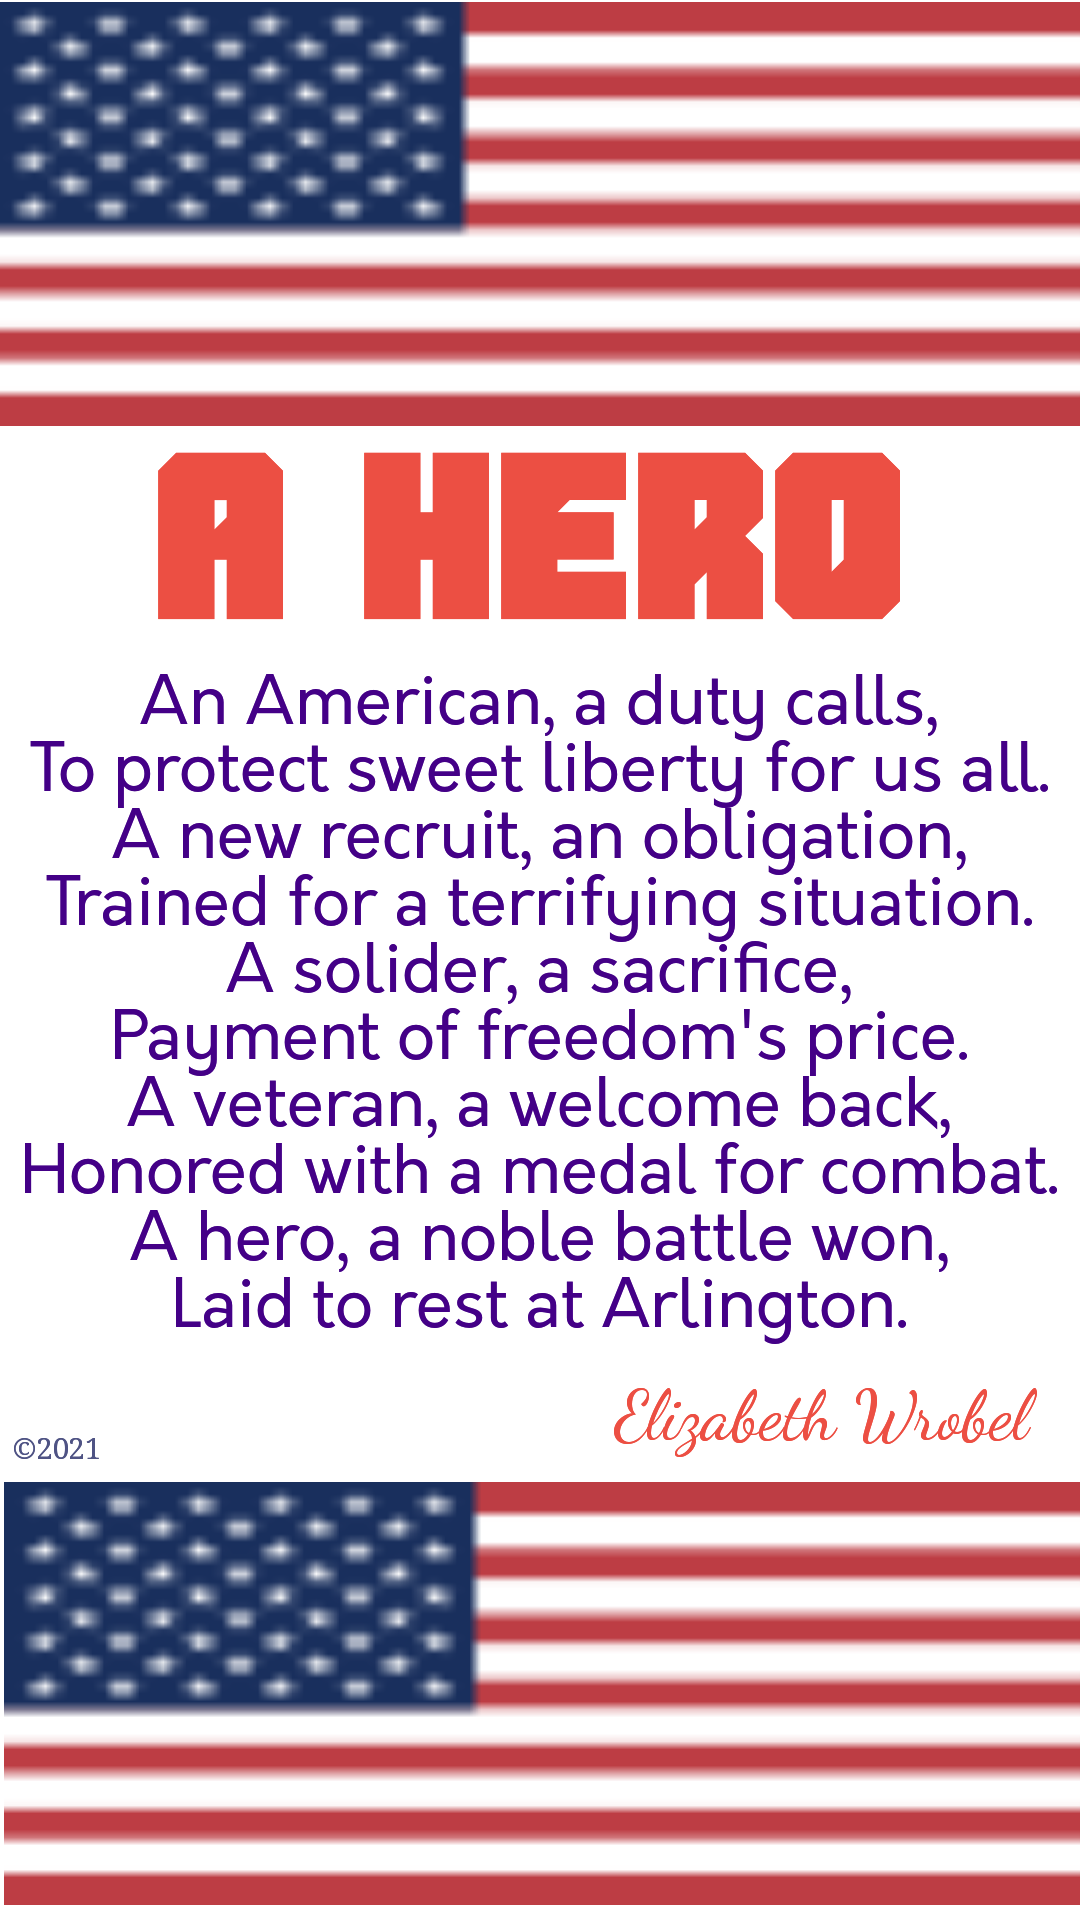 A Hero a patriotic poem by Elizabeth Wrobel